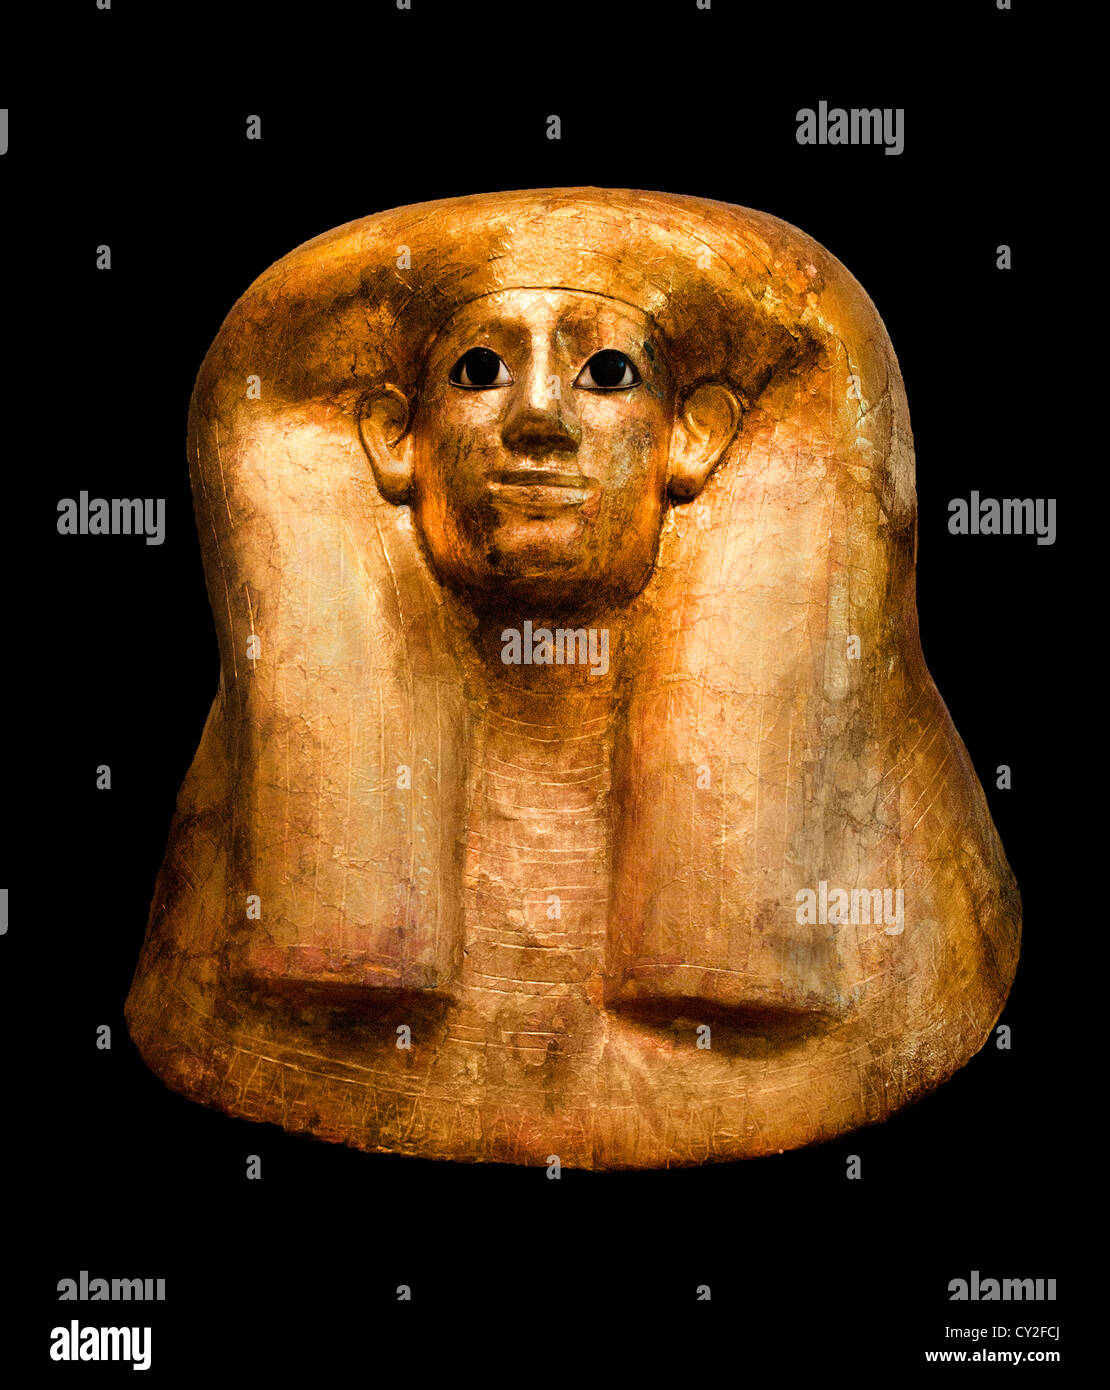 Masque funéraire de la dynastie Hatnefer 18 1492-1473 av. J.-C. règne Thoutmosis III Thèbes, Cheikh Abd el-QurnaTomb Hatnefer Ramosé égyptien d'or Banque D'Images